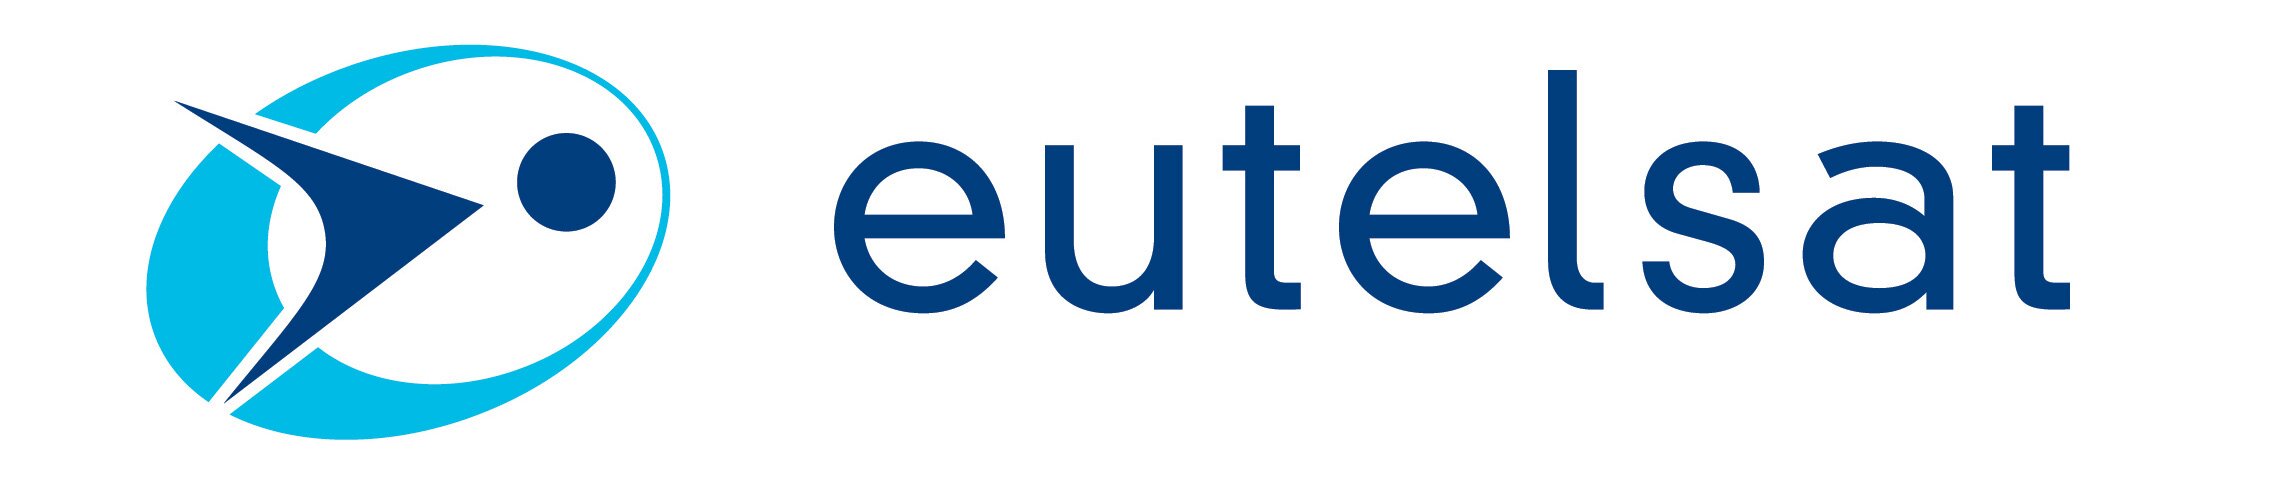 EutelSat